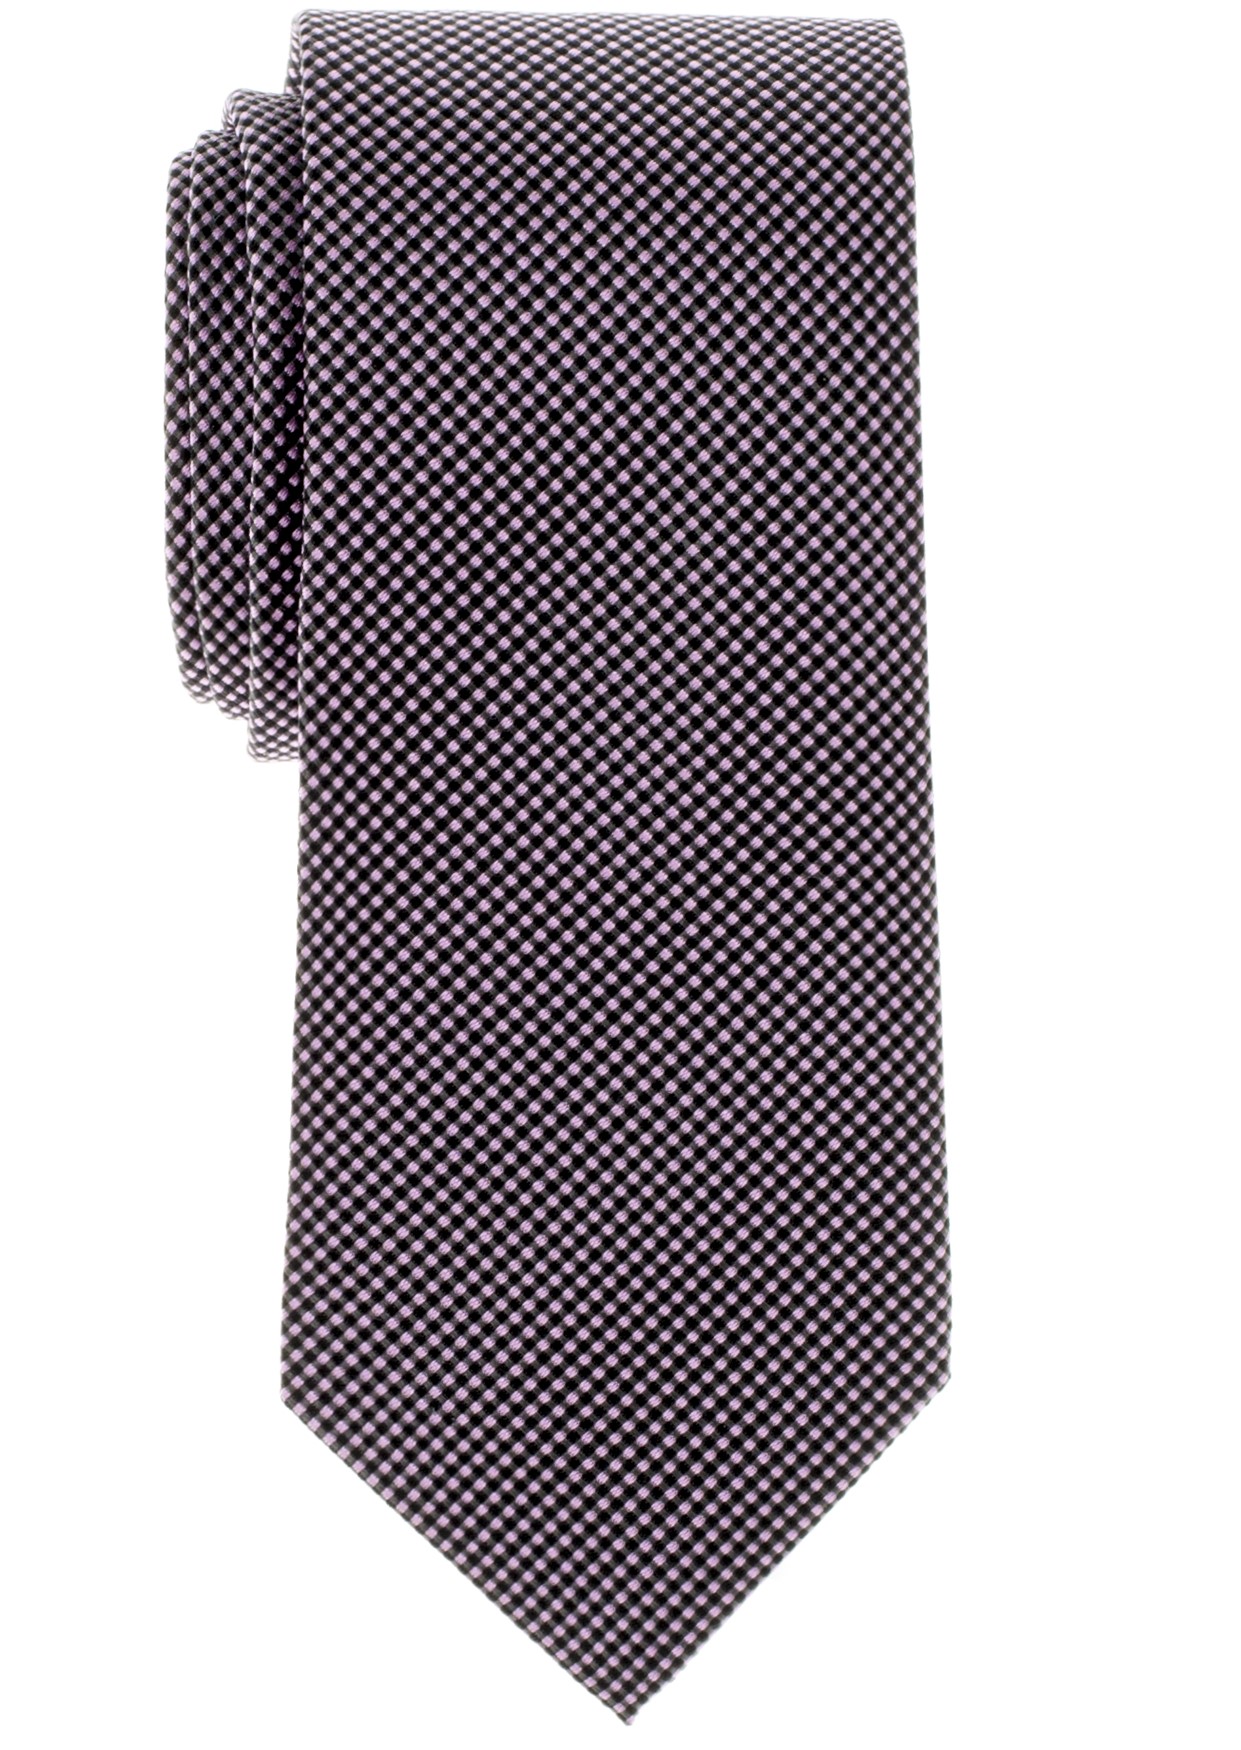 Extralange Eterna Krawatte rosa pink grau liefert Hemden Online Shop Hemd24  | ETERNA und Olymp Hemden 68 + 72 cm Extra Lang